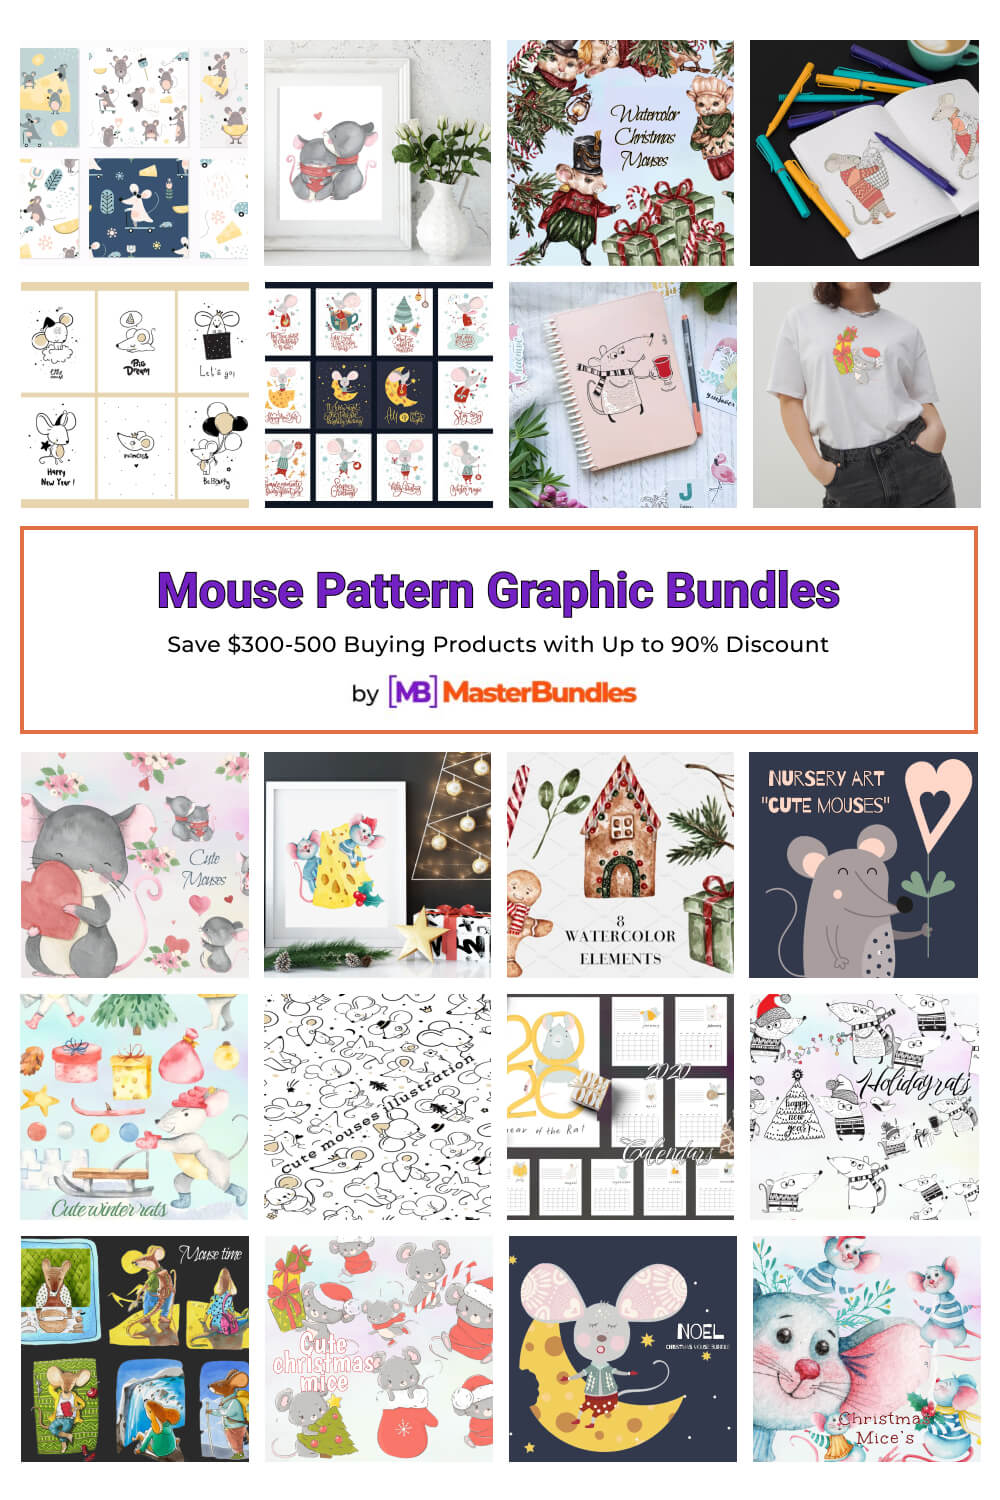 mouse pattern graphic bundles pinterest image.